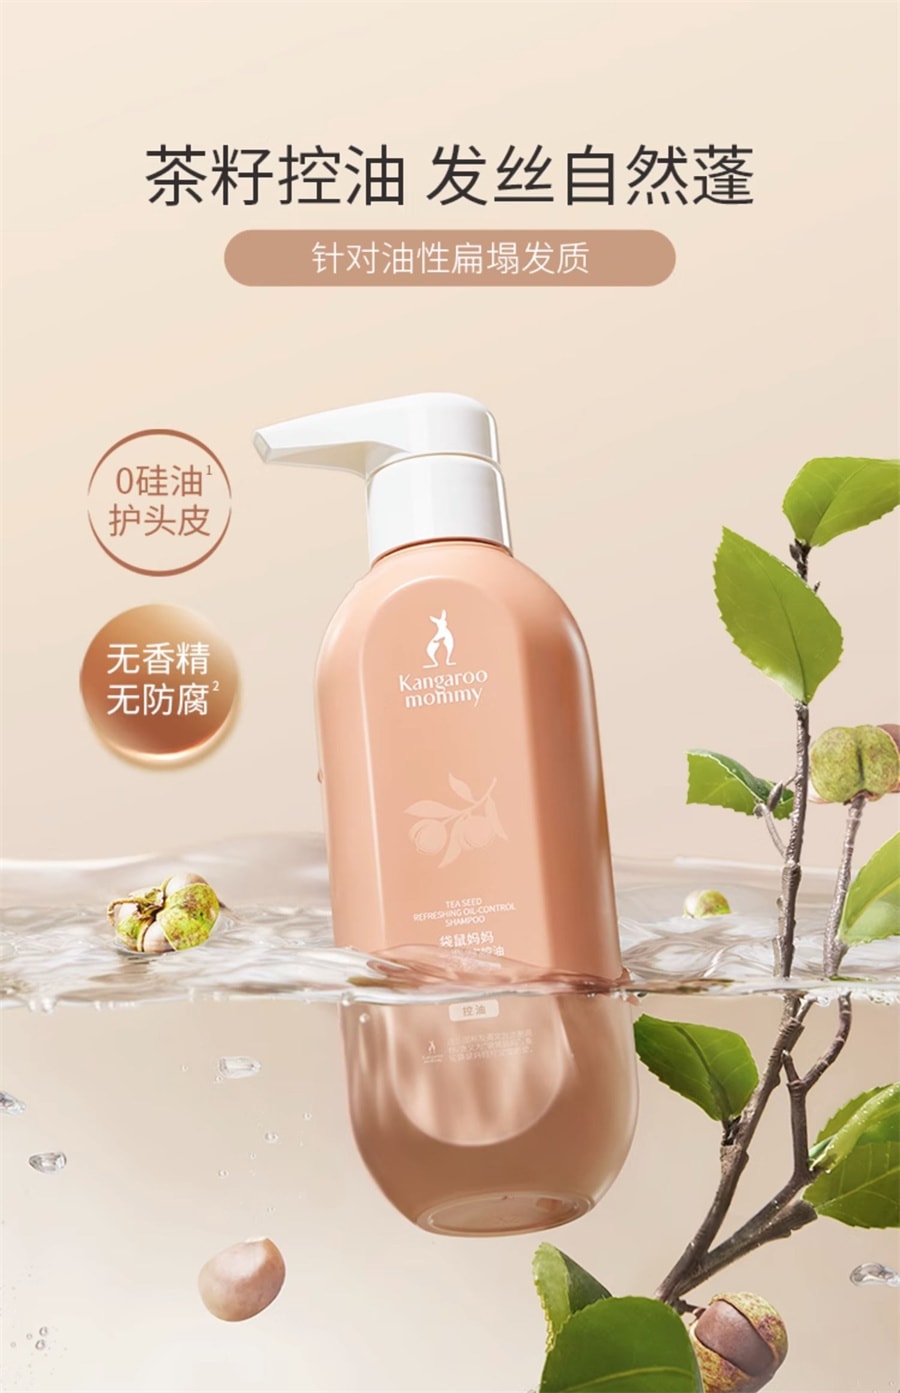 【中国直邮】袋鼠妈妈  洗发水茶籽控油洗发露洗护专用护肤品清洁保湿可用  300g/瓶